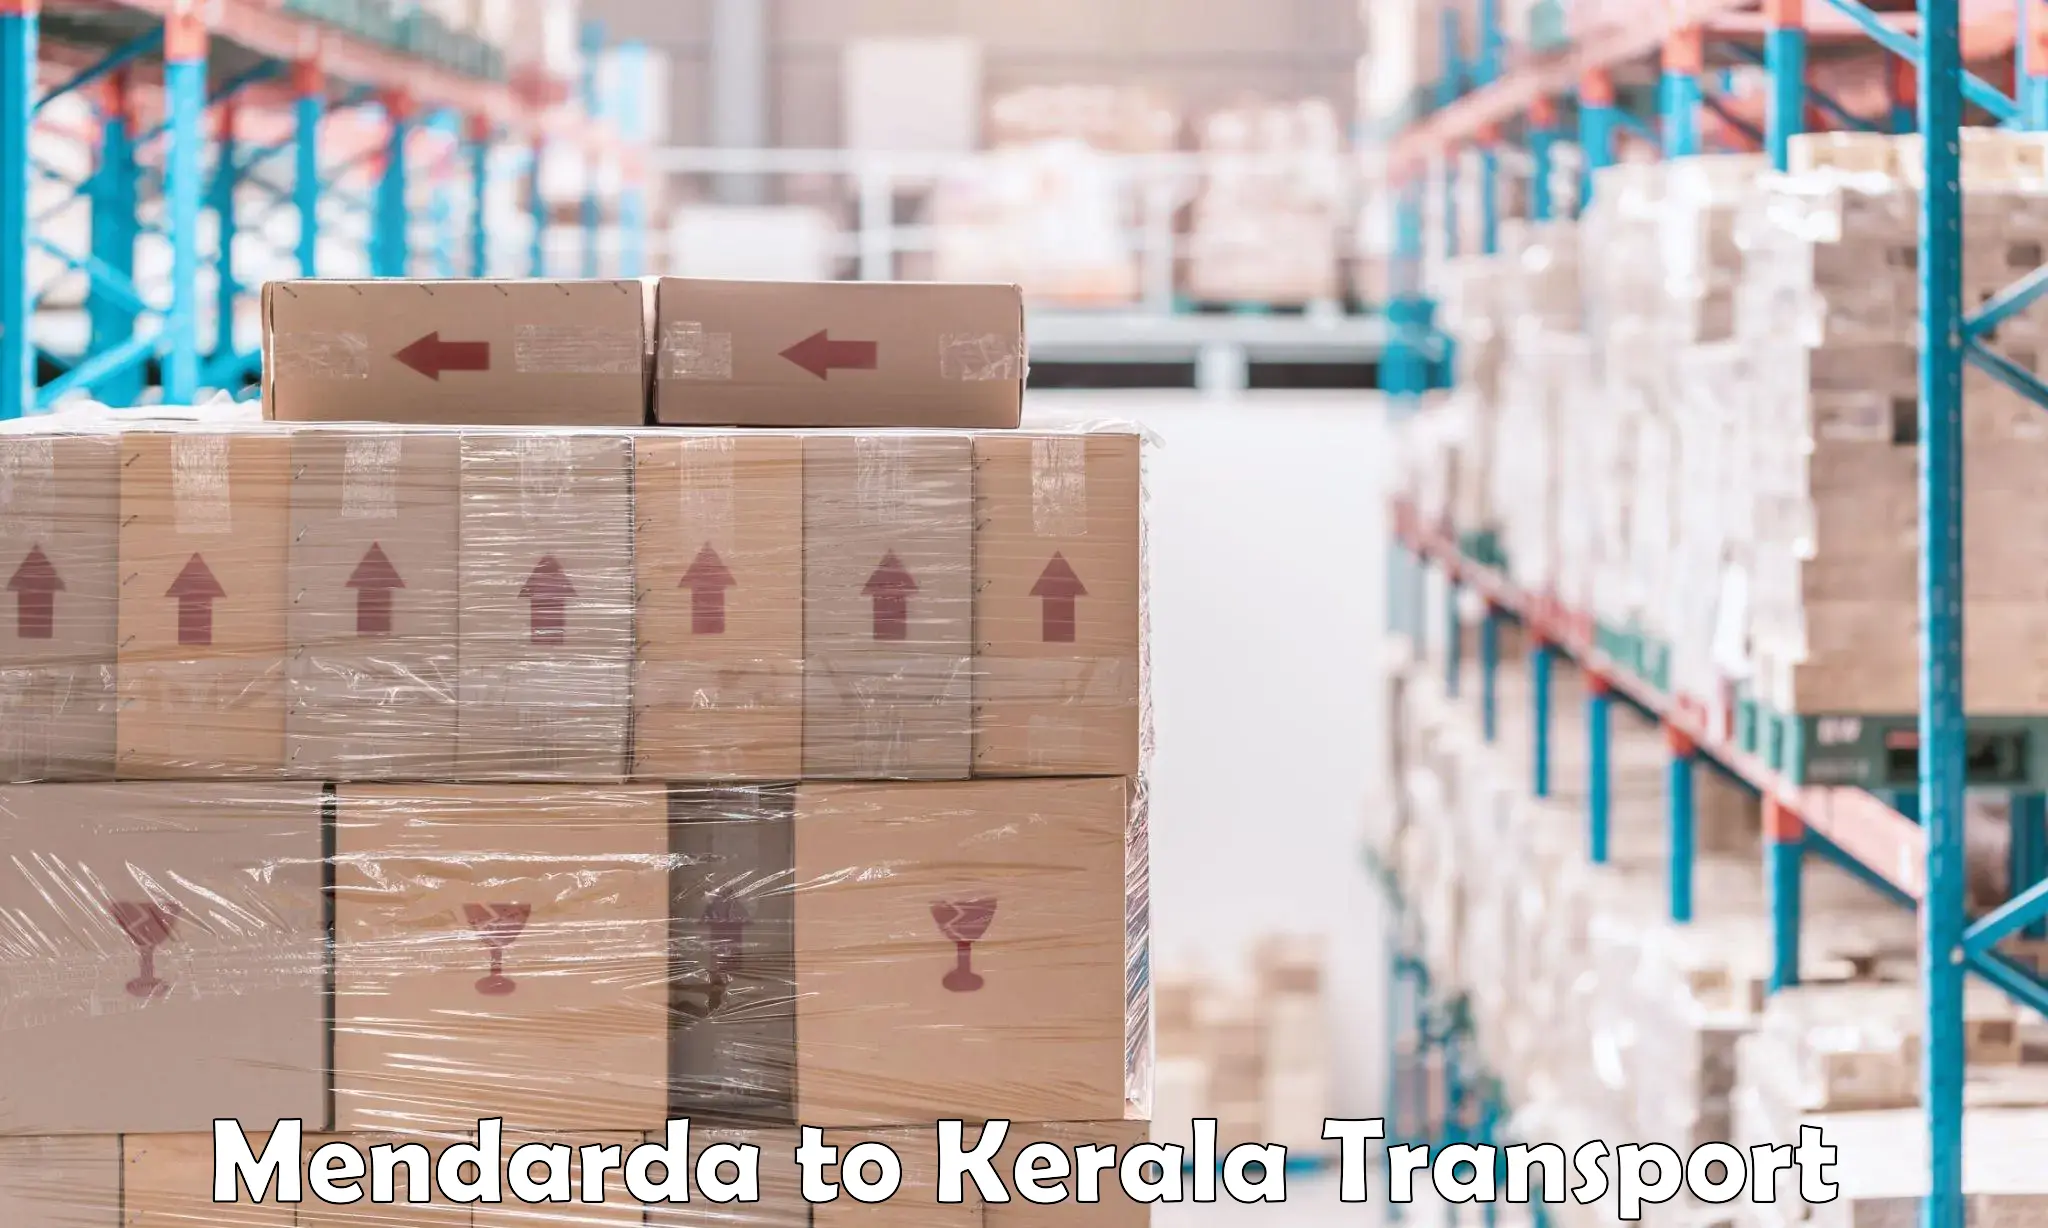 Transport in sharing Mendarda to Edavanna